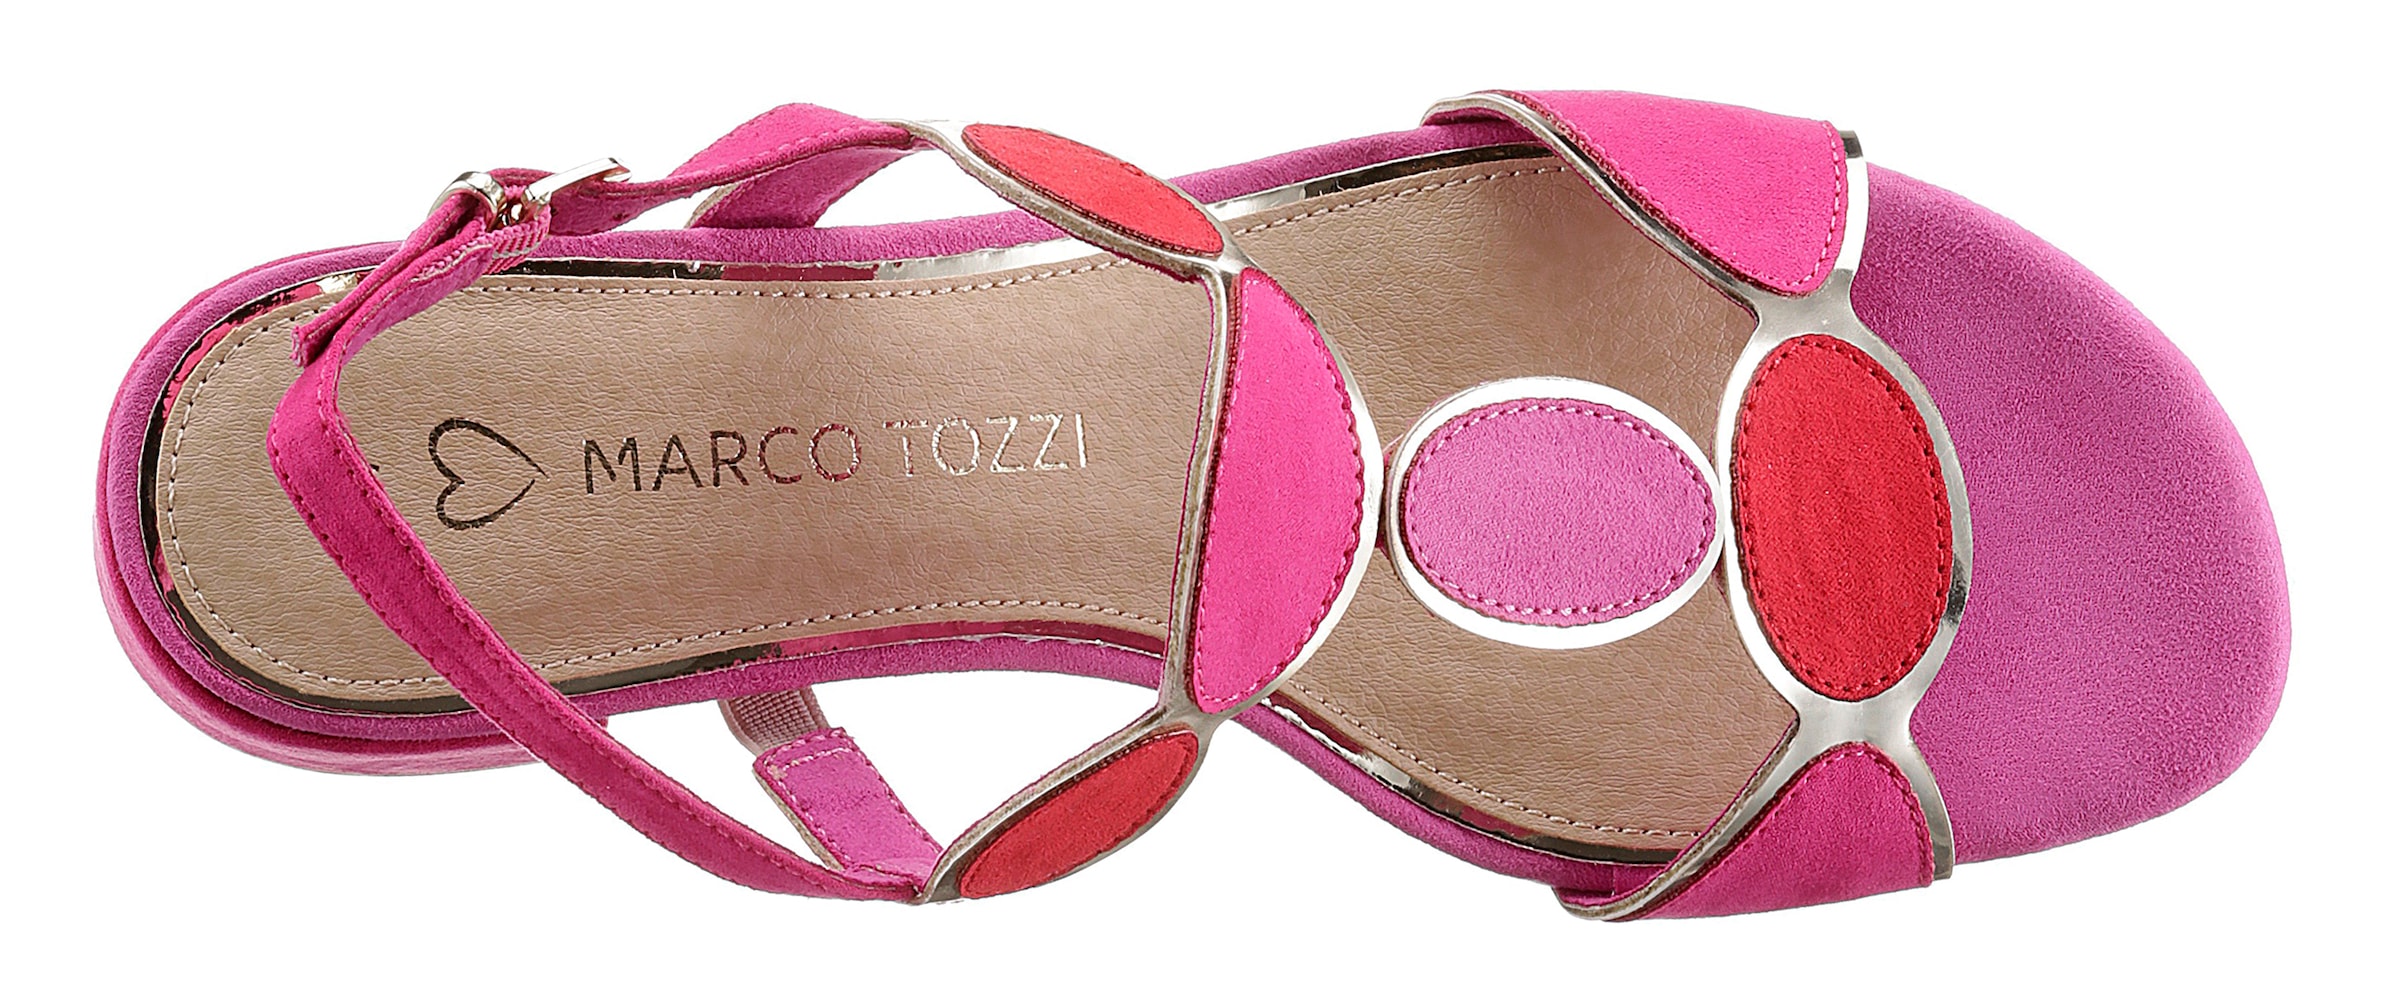 MARCO TOZZI Sandalette, Sommerschuh, Sandale, Blockabsatz, mit verstellbarer Schnalle